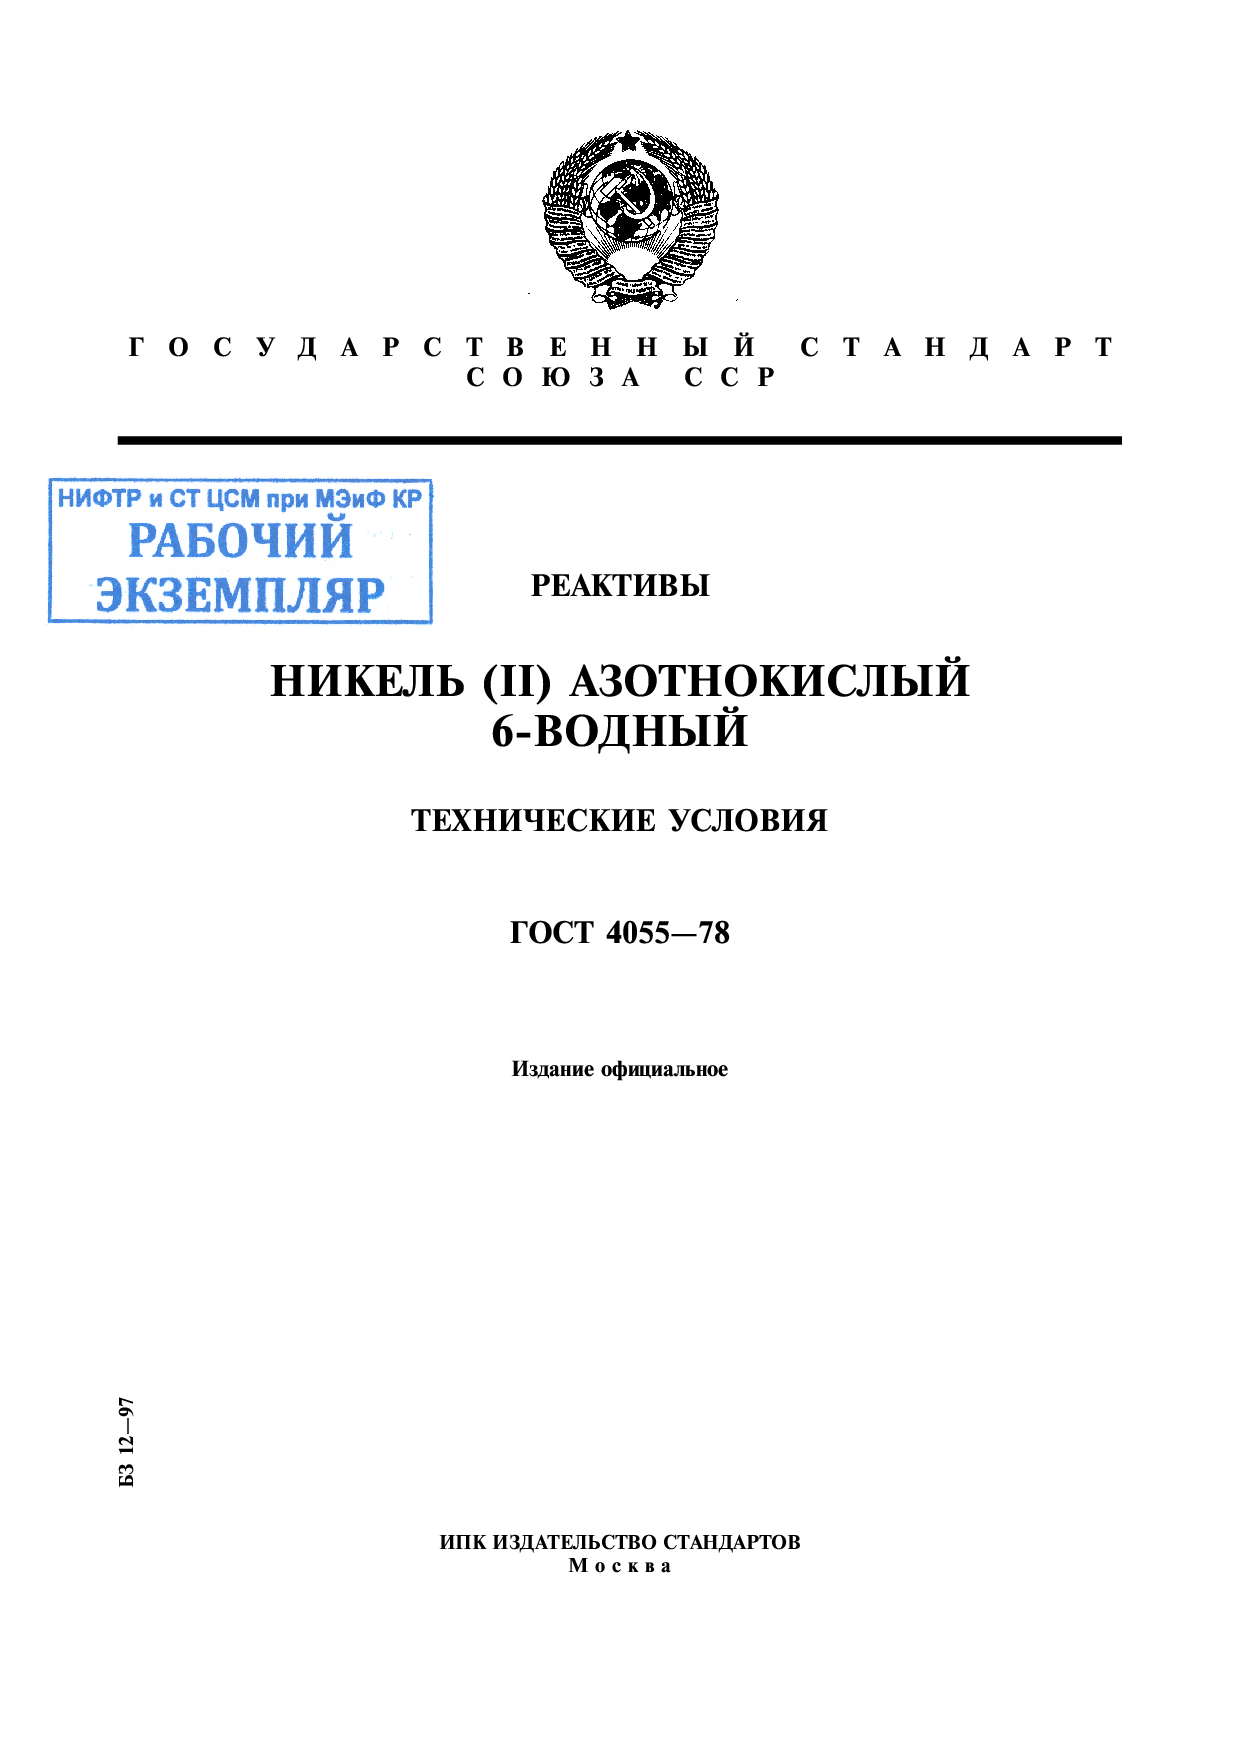 Реактивы. Никель (II) азотнокислый 6-водный. Технические условия